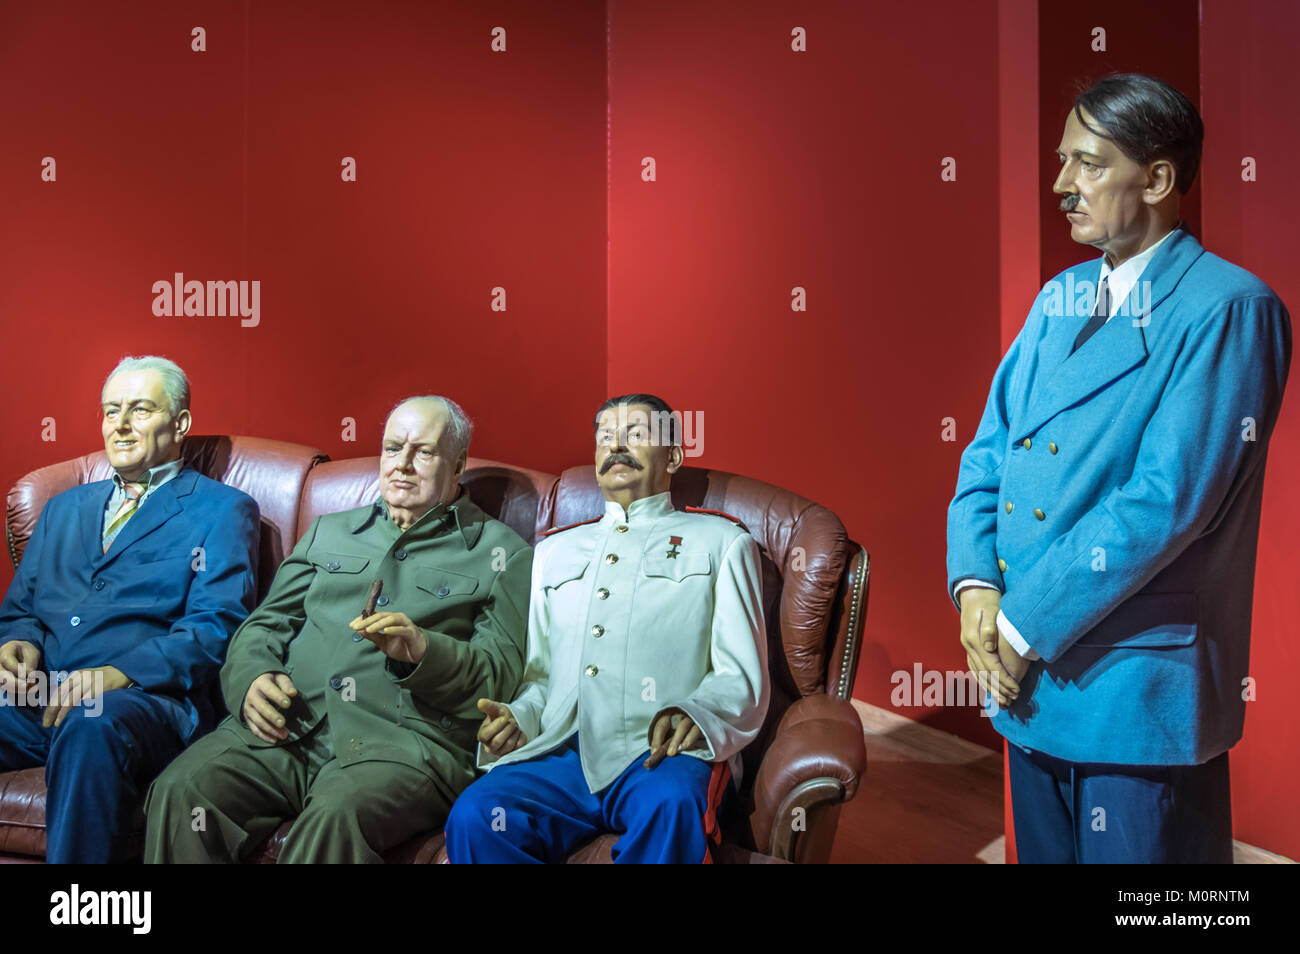 Wachs Statuen der vier Mächte Roosevelt, Churchill, Stalin und Hitler an der Krakauer Wax Museum - Krakau, Polen. Stockfoto